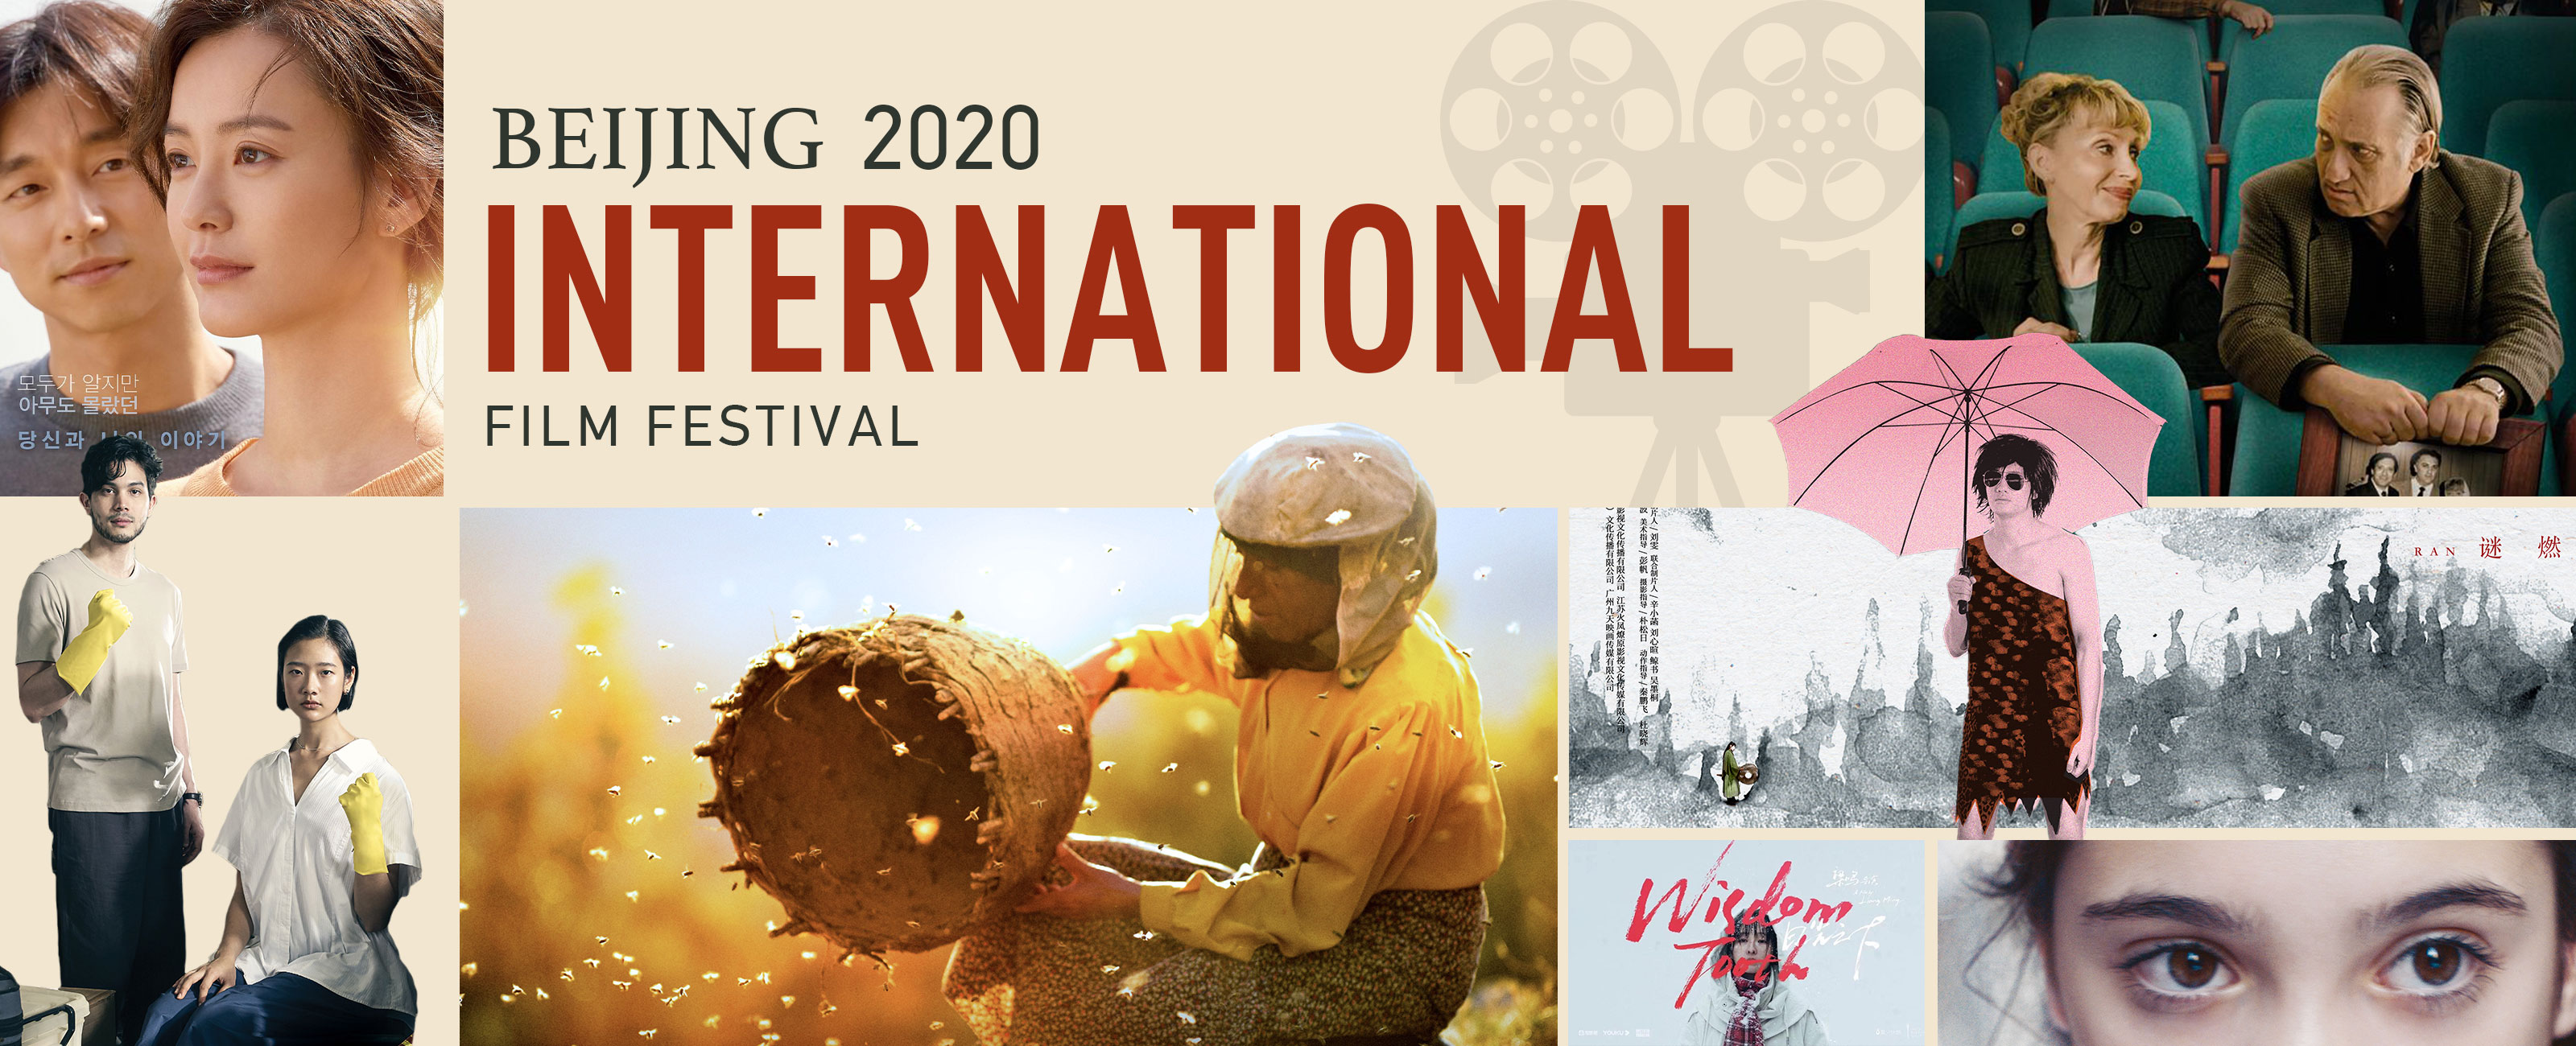 Beijing 2020 International Film Festival